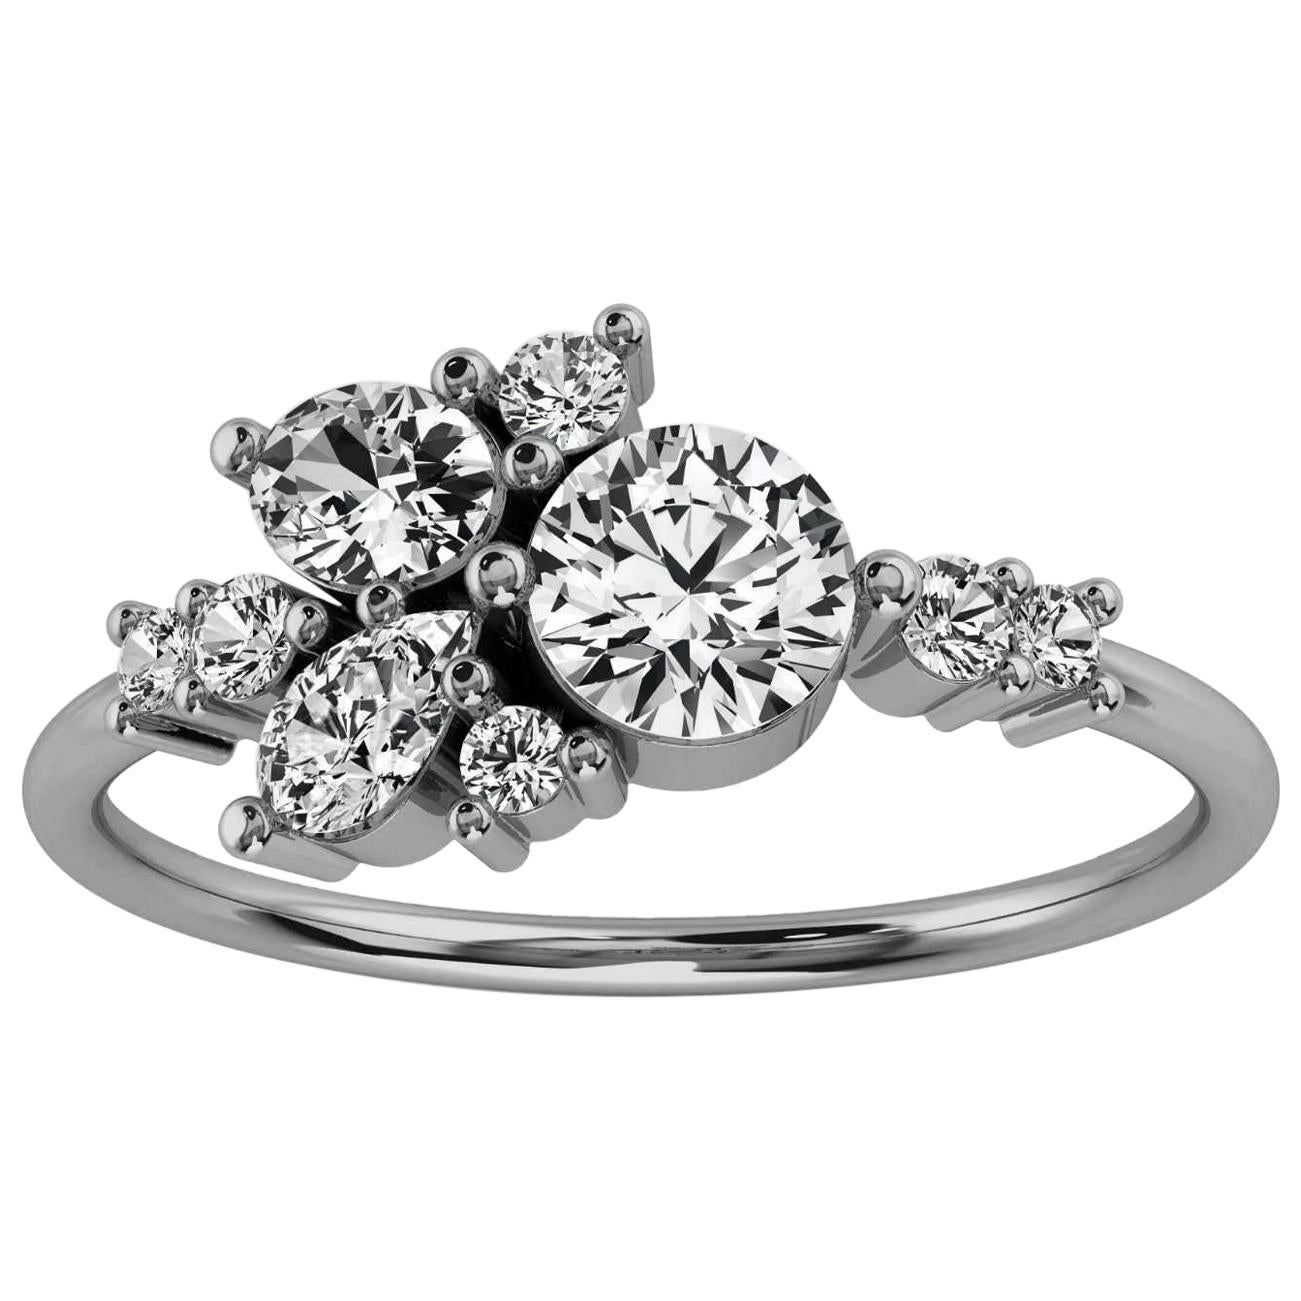 Platinum Tima Delicate Scattered Organic Design Diamond Ring '3/4 Ct. tw'